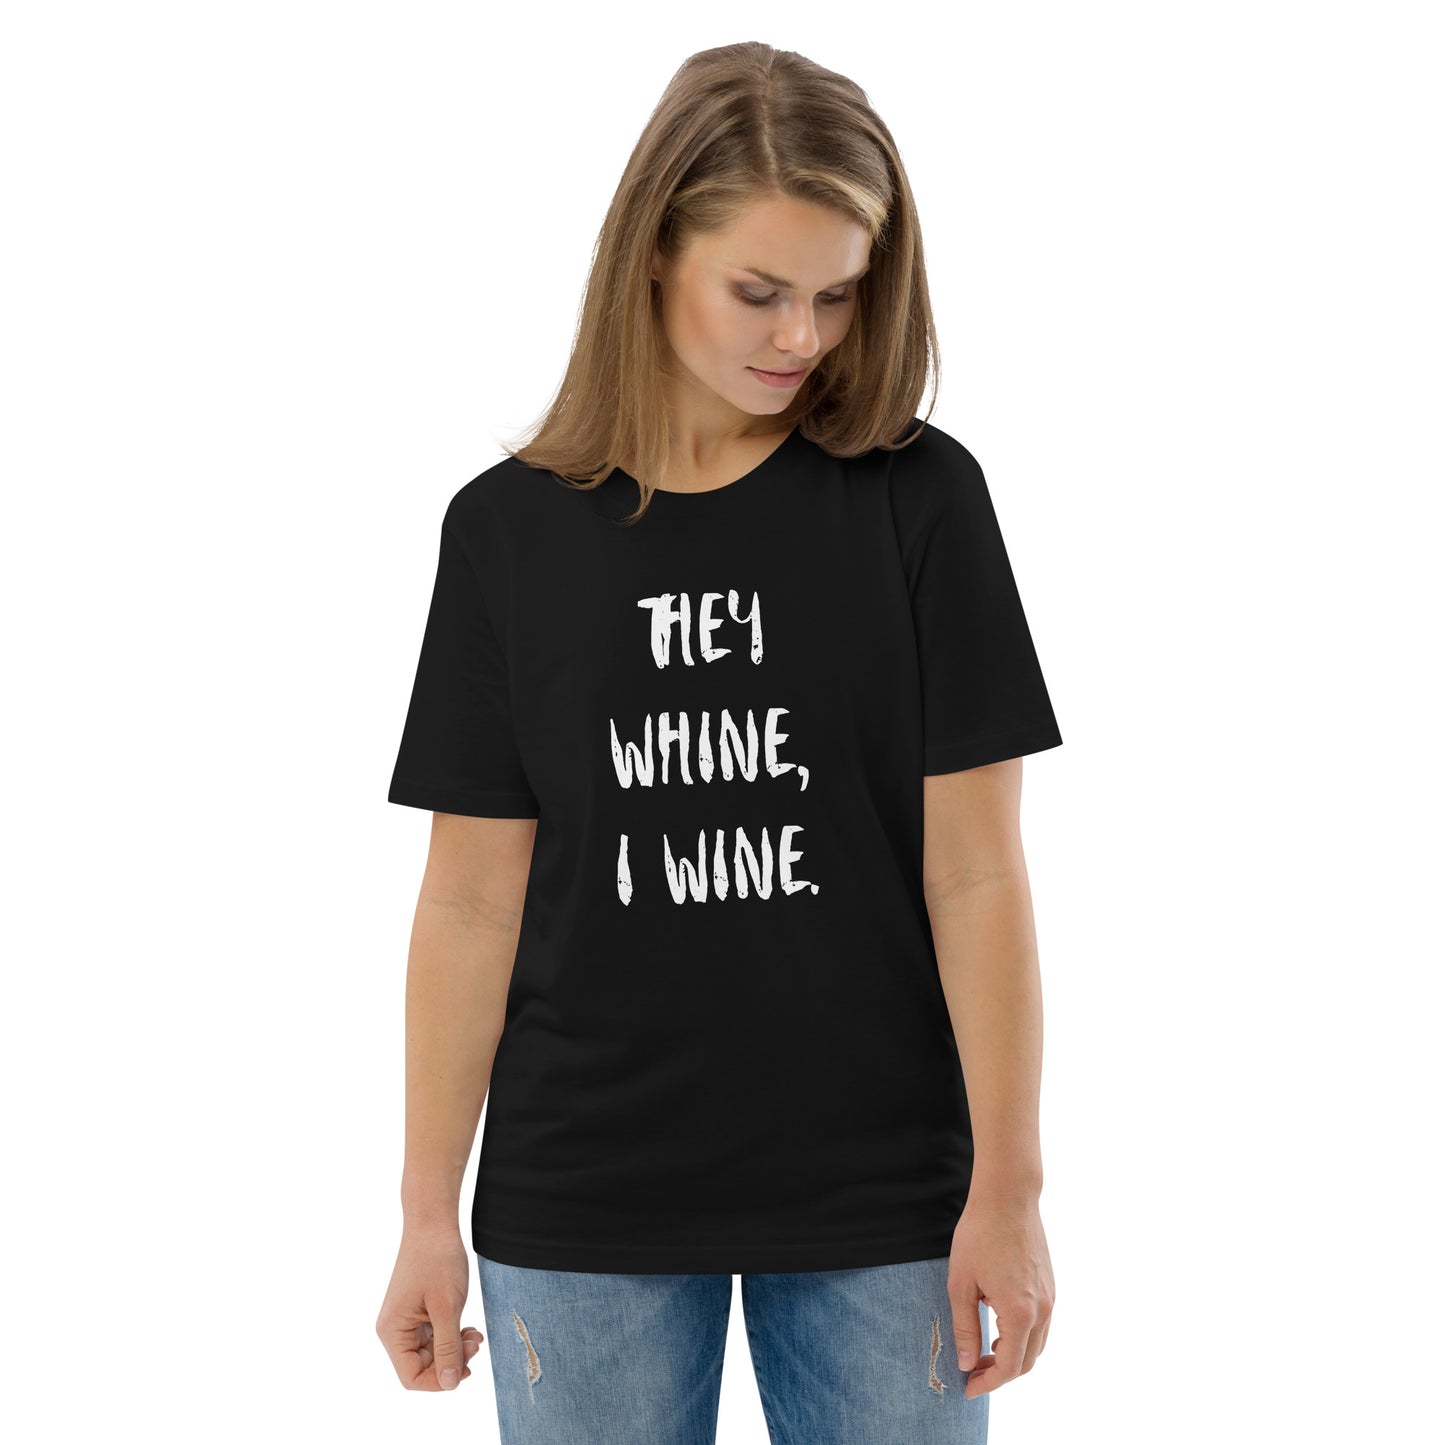 T-Shirt Dam Organic - They Whine, I Wine.